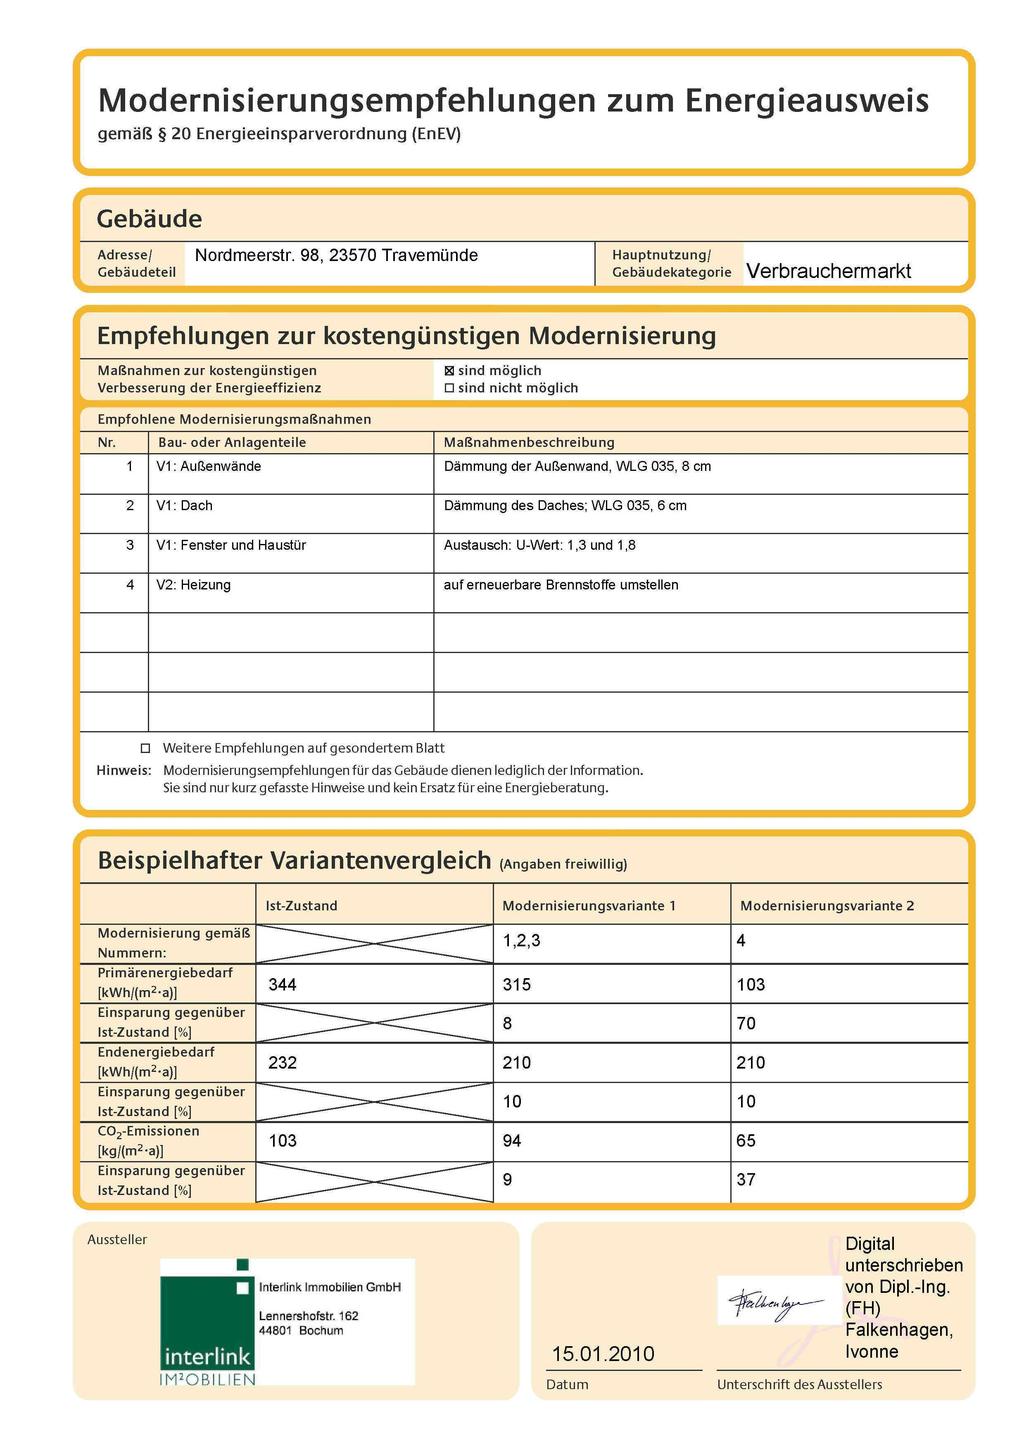 Modernisierungsempfehlungen zum Energieausweis gemäß 20 Energieeinsparverordnung (EnEV) Adresse/ Nordmeerstr.